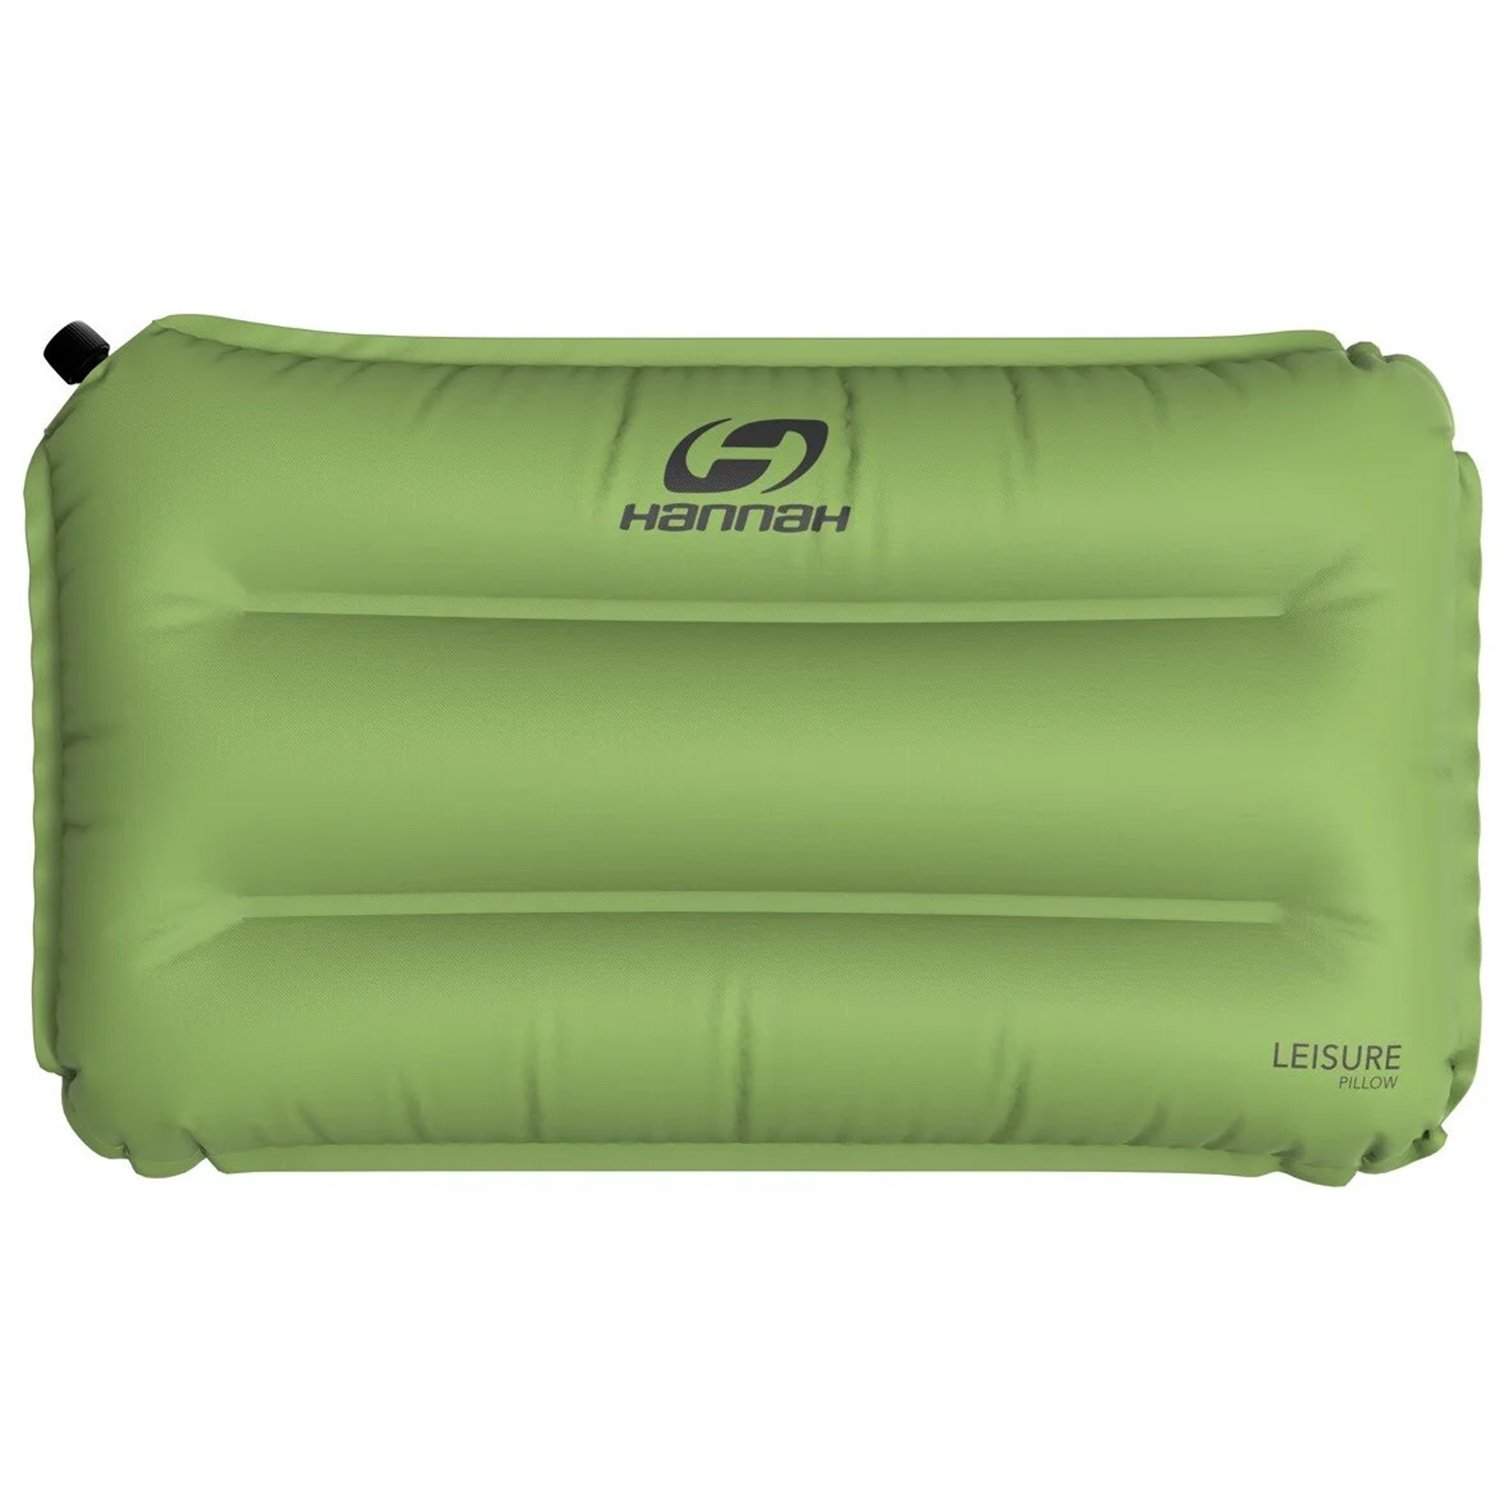 Hannah Pillow Comfort Outdoor Şişme Yastık - Yeşil - 1